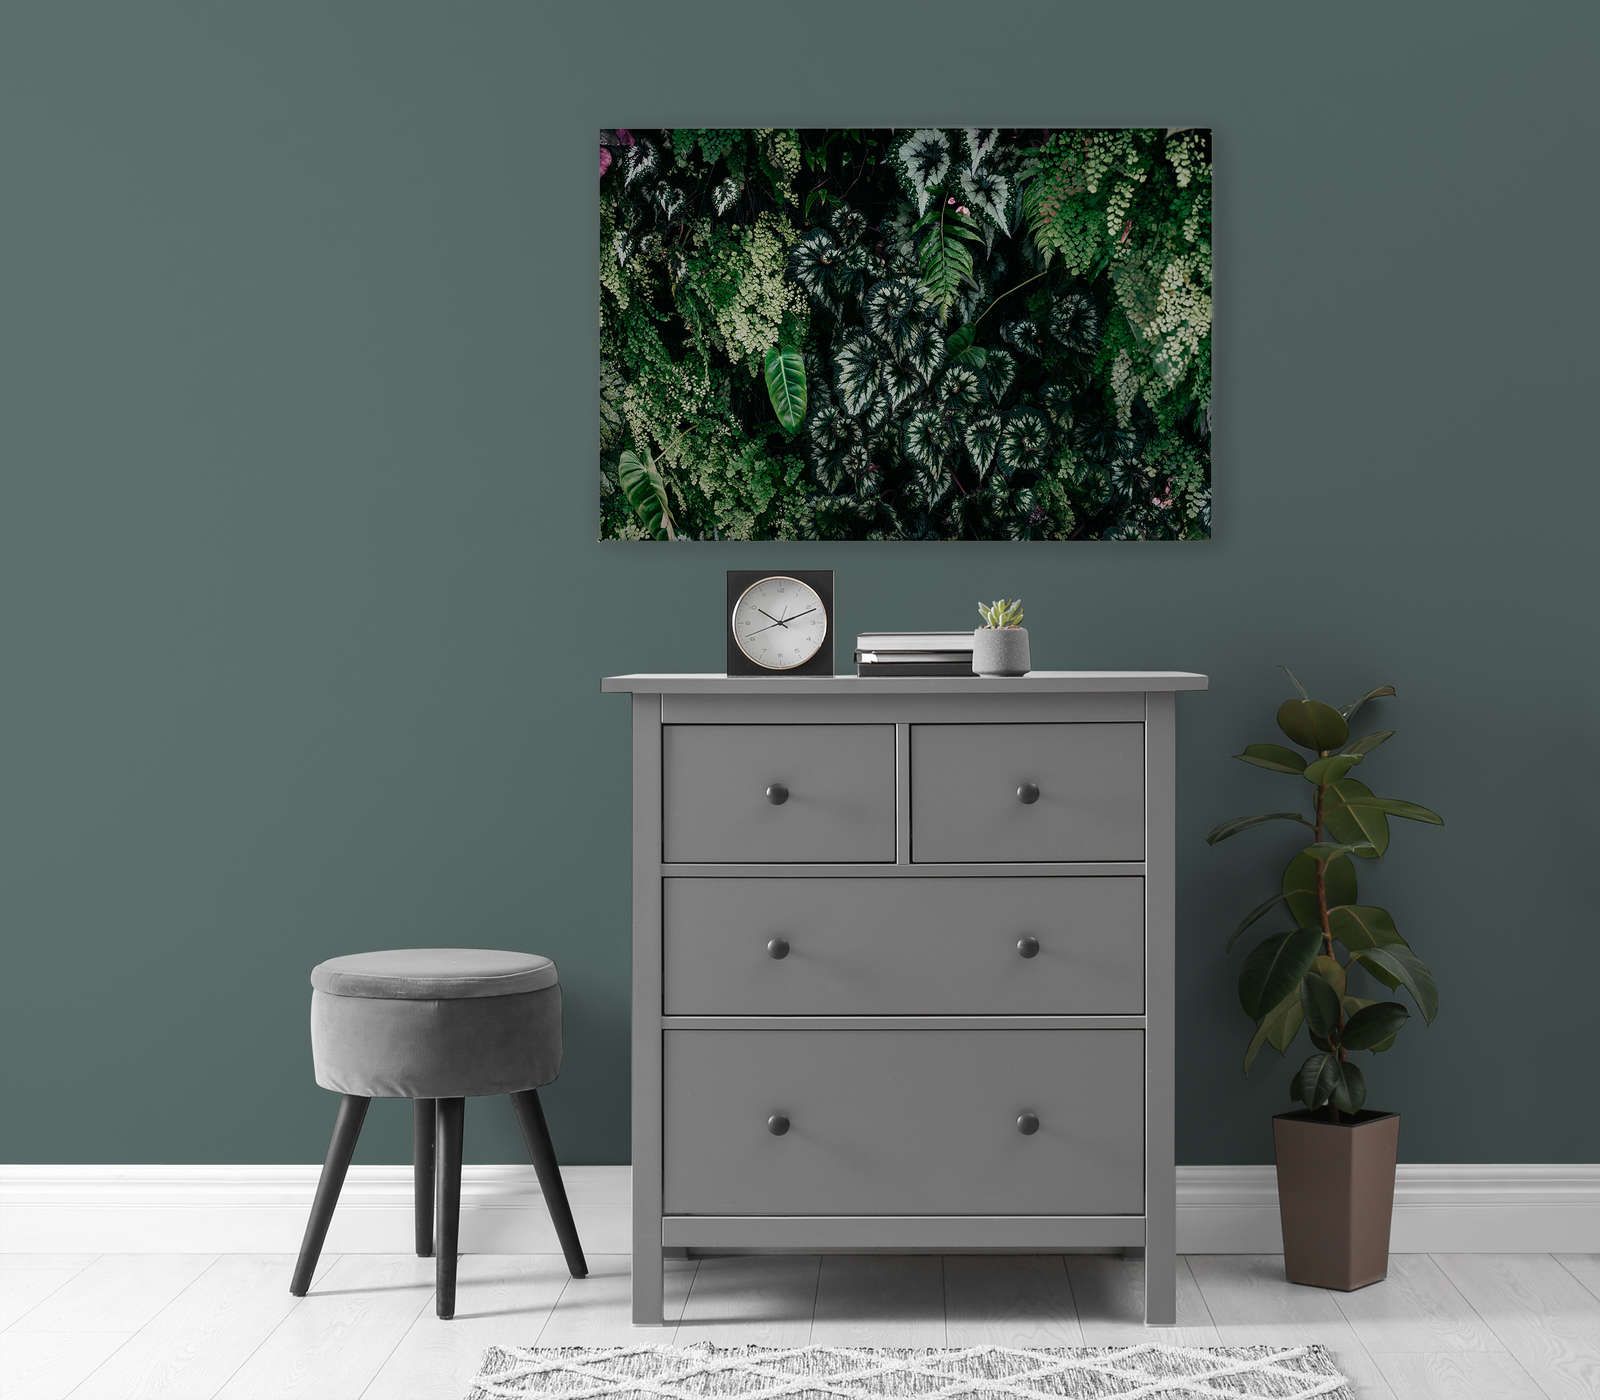             Deep Green 2 - Pintura sobre lienzo Matorral de follaje, helechos y plantas colgantes - 0,90 m x 0,60 m
        